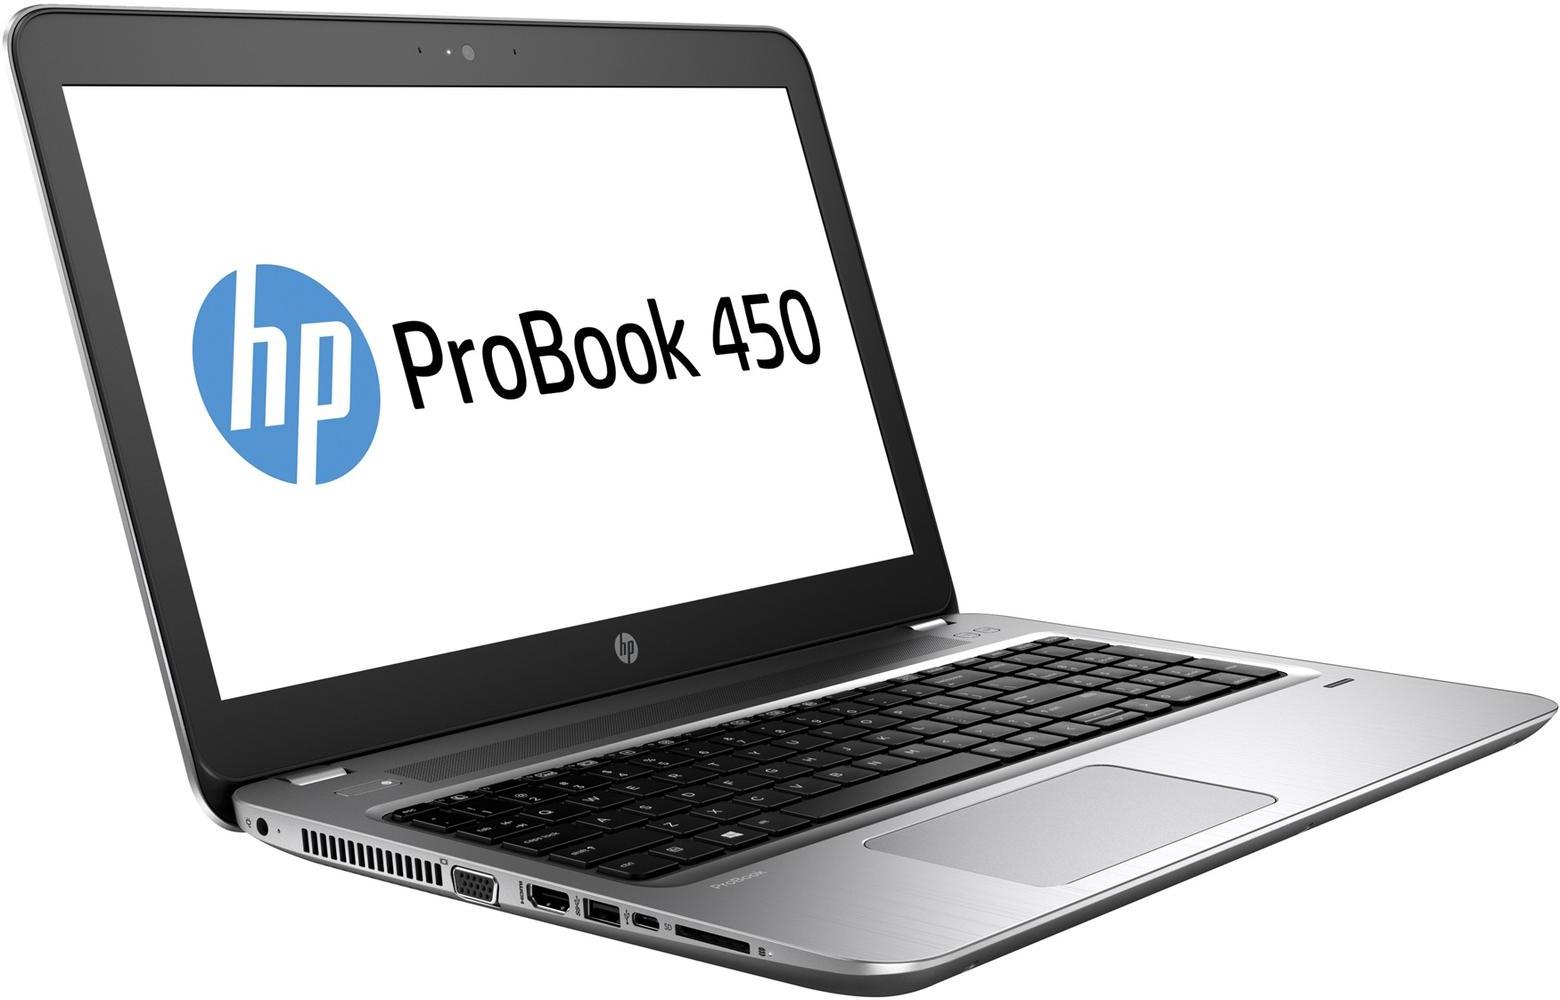   HP Probook 450 G4 (Y8A35EA)  1